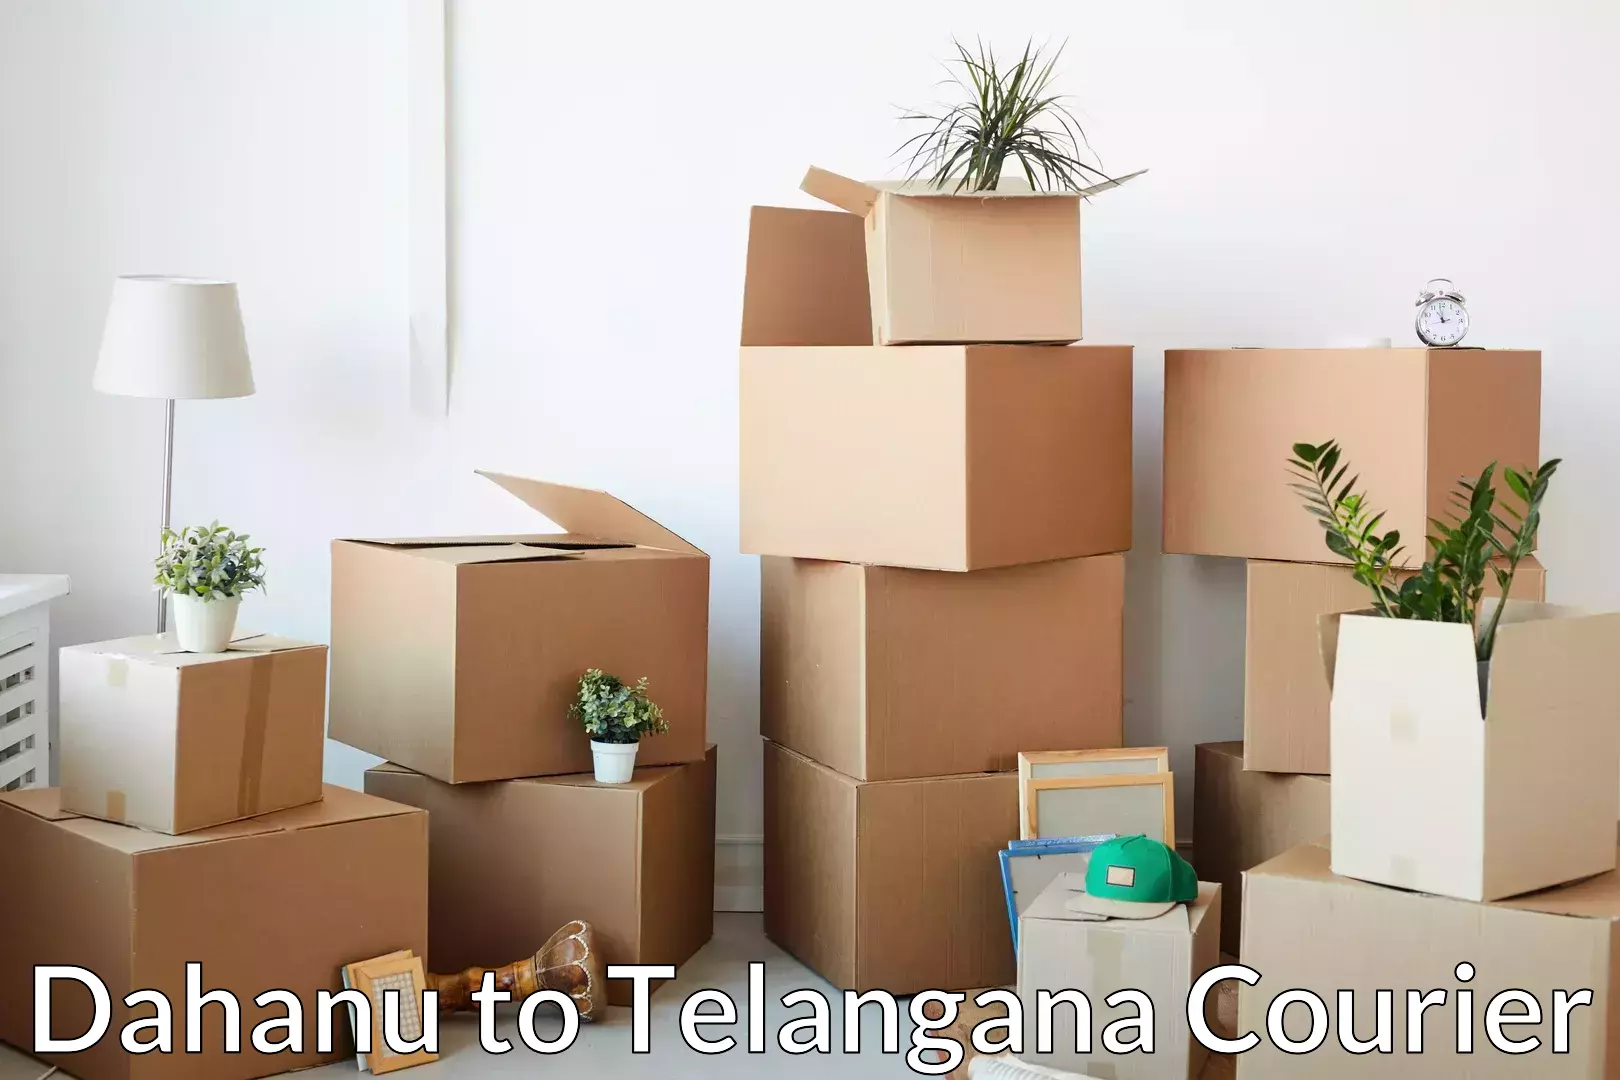 Trusted moving company Dahanu to Wanaparthy